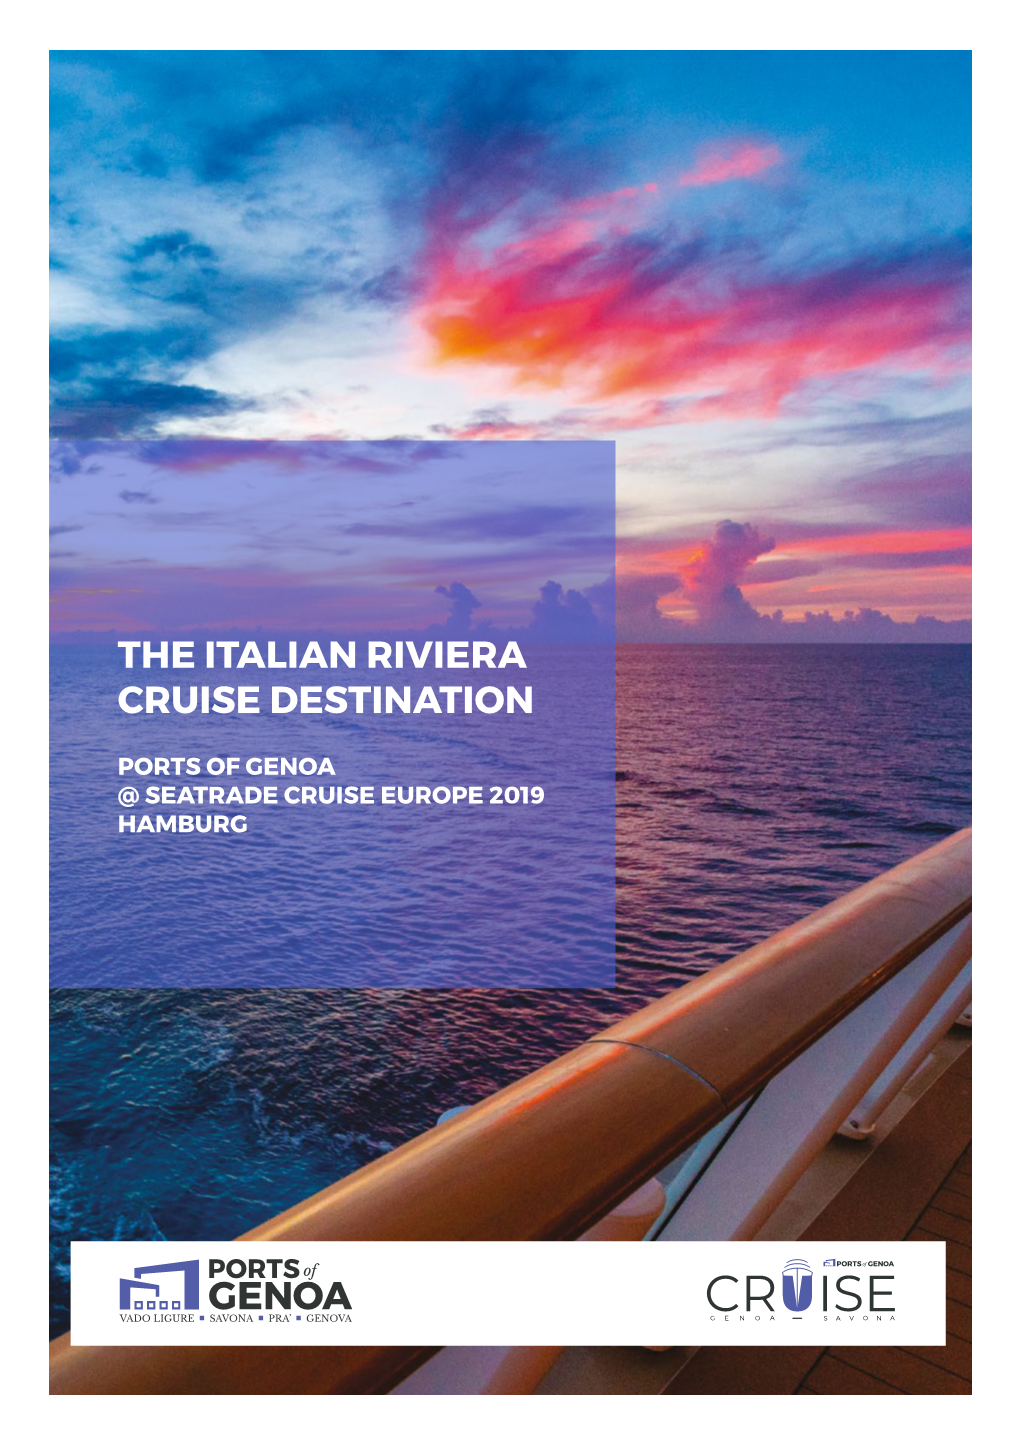 The Italian Riviera Cruise Destination